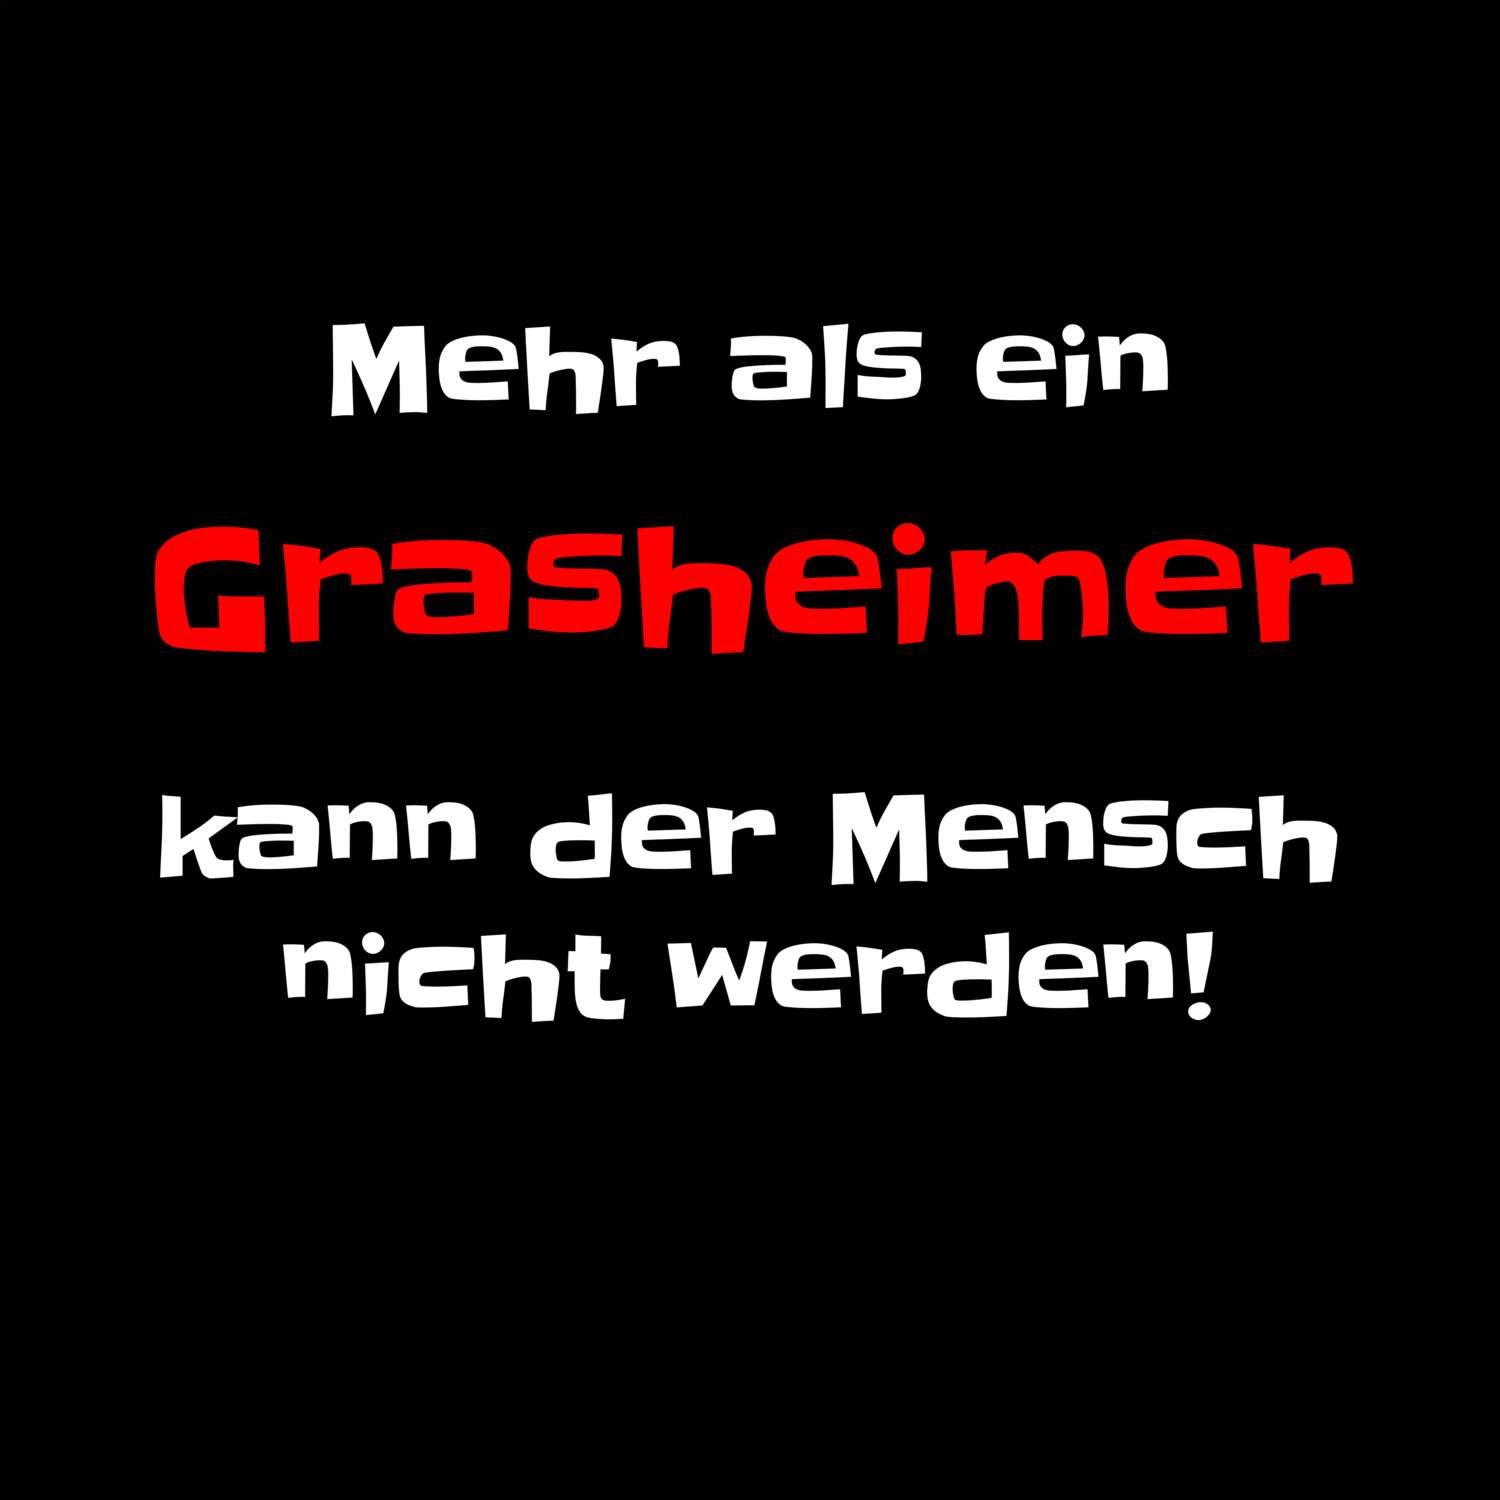 Grasheim T-Shirt »Mehr als ein«